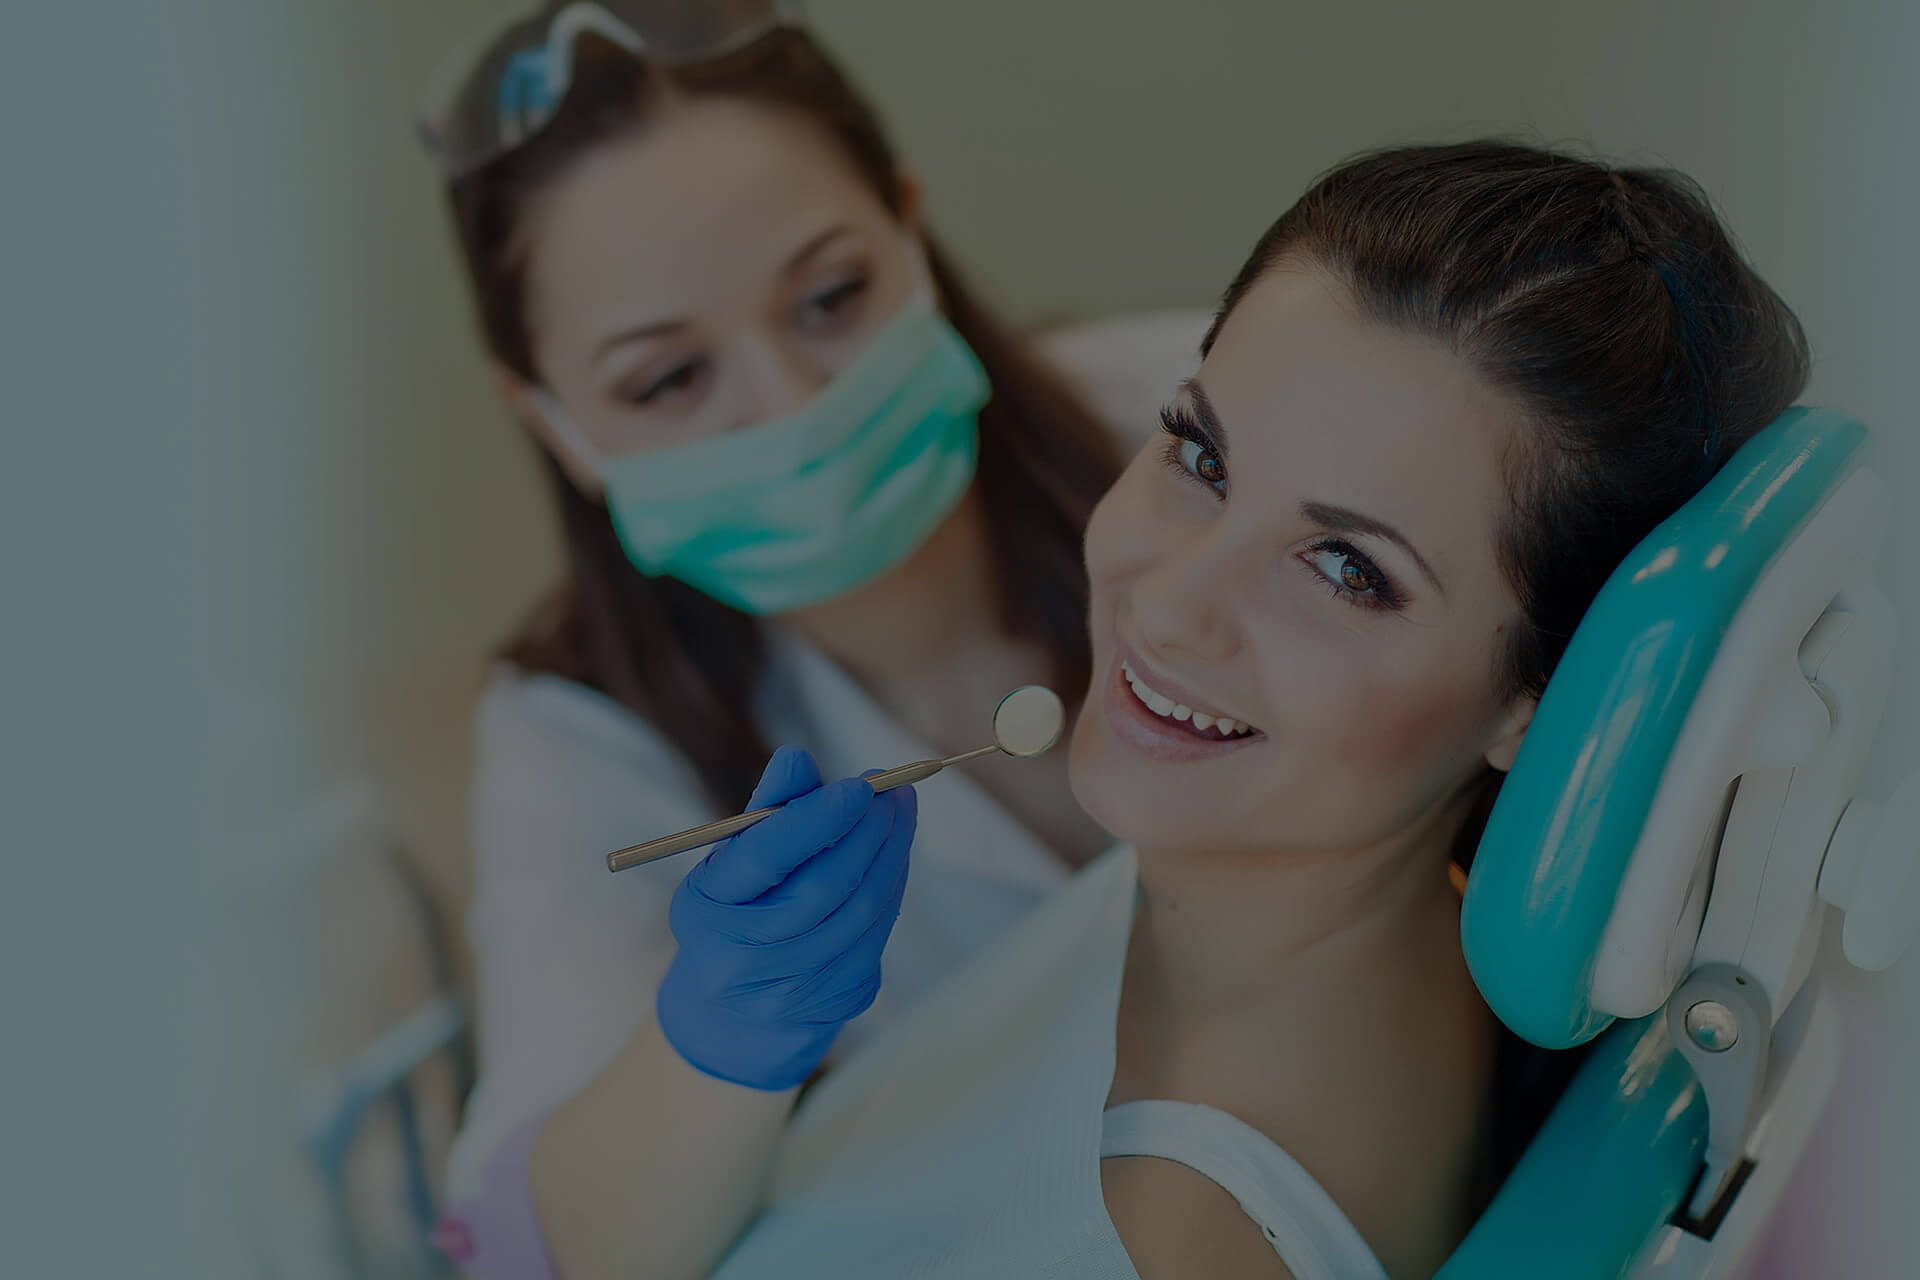 Antalya Dental Implant